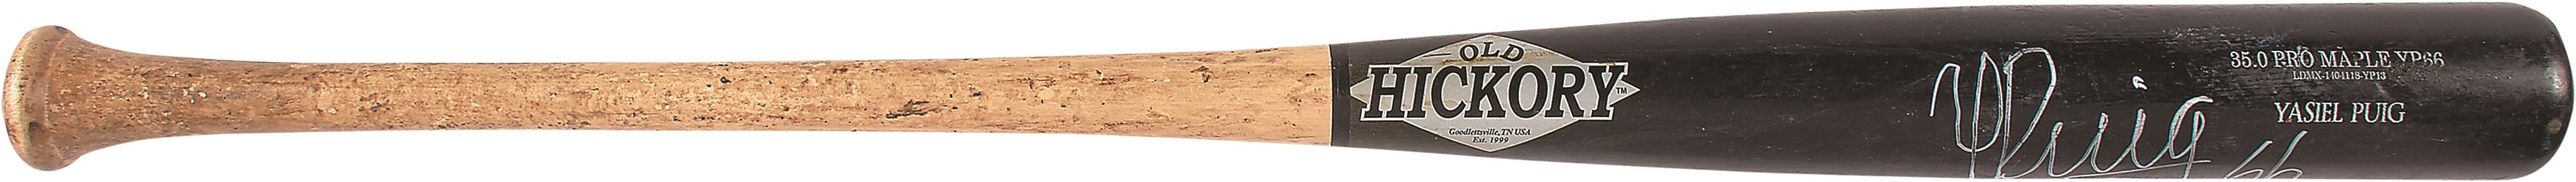 Baseball Equipment - 2013 Rookie Yasiel Puig Signed Game Used Bat